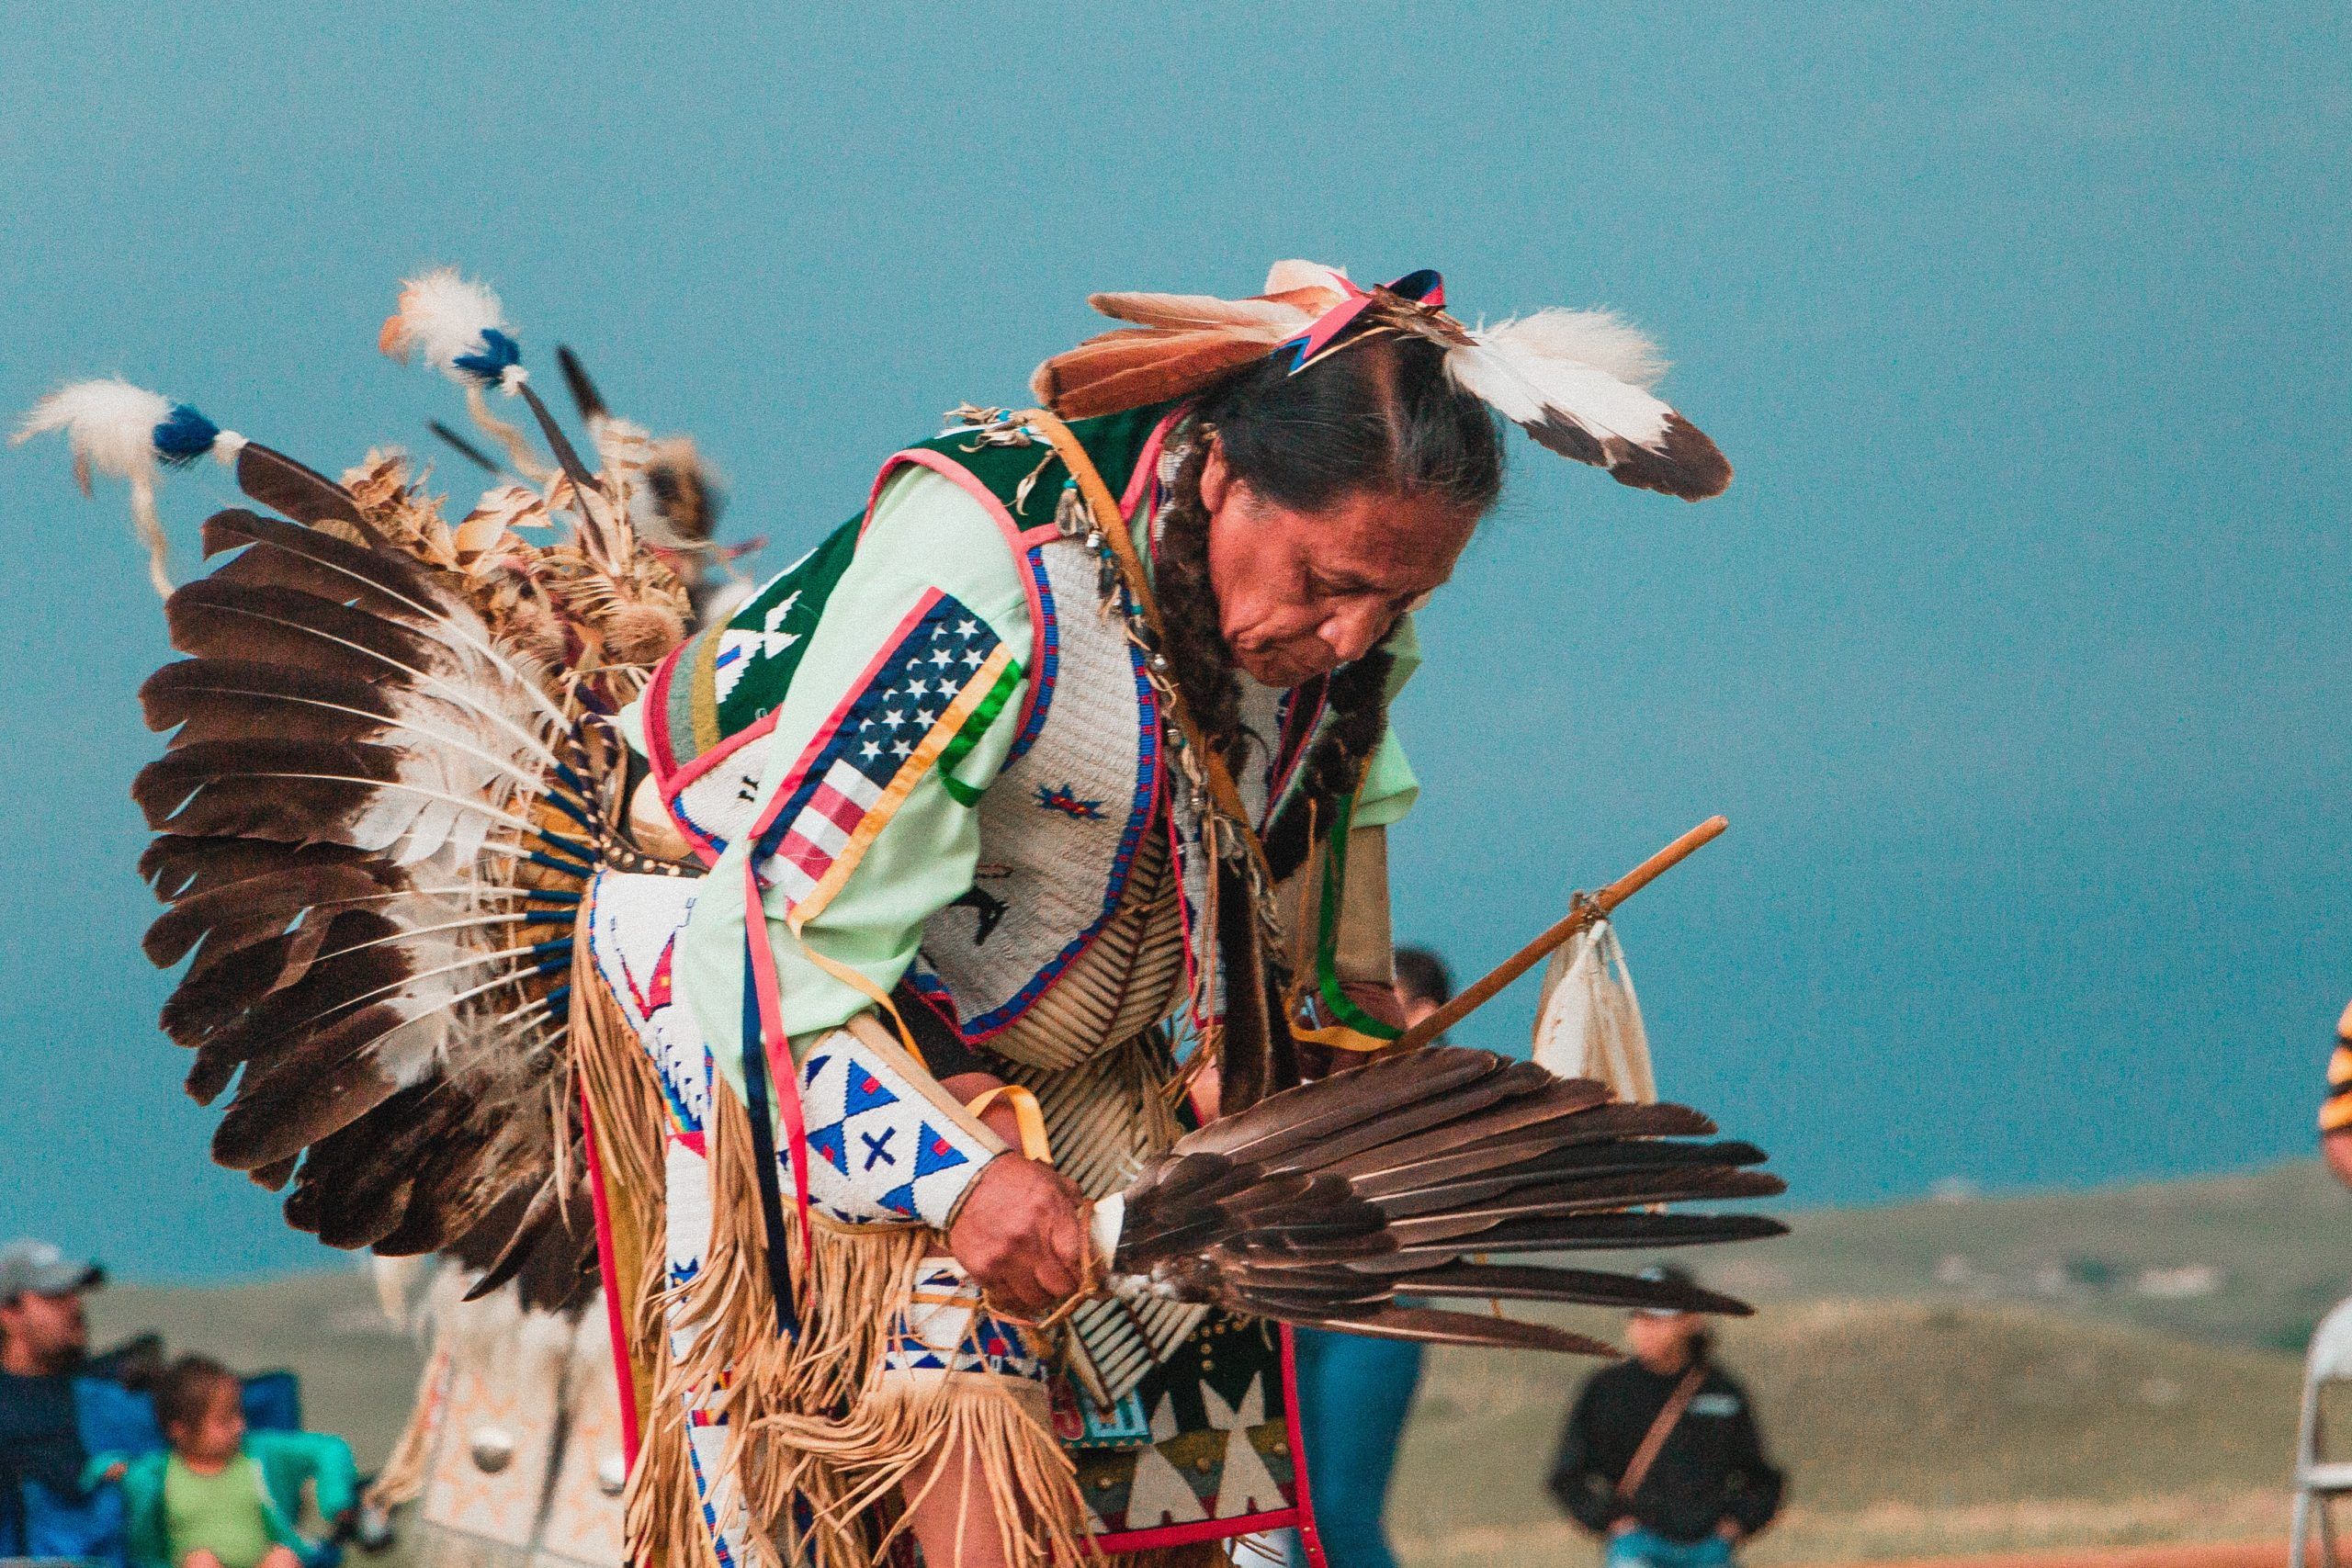 Un amérindien dans le Dakota du Sud, en habits traditionnels avec des plumes, en train de danser - Photo by Andrew James on Unsplash